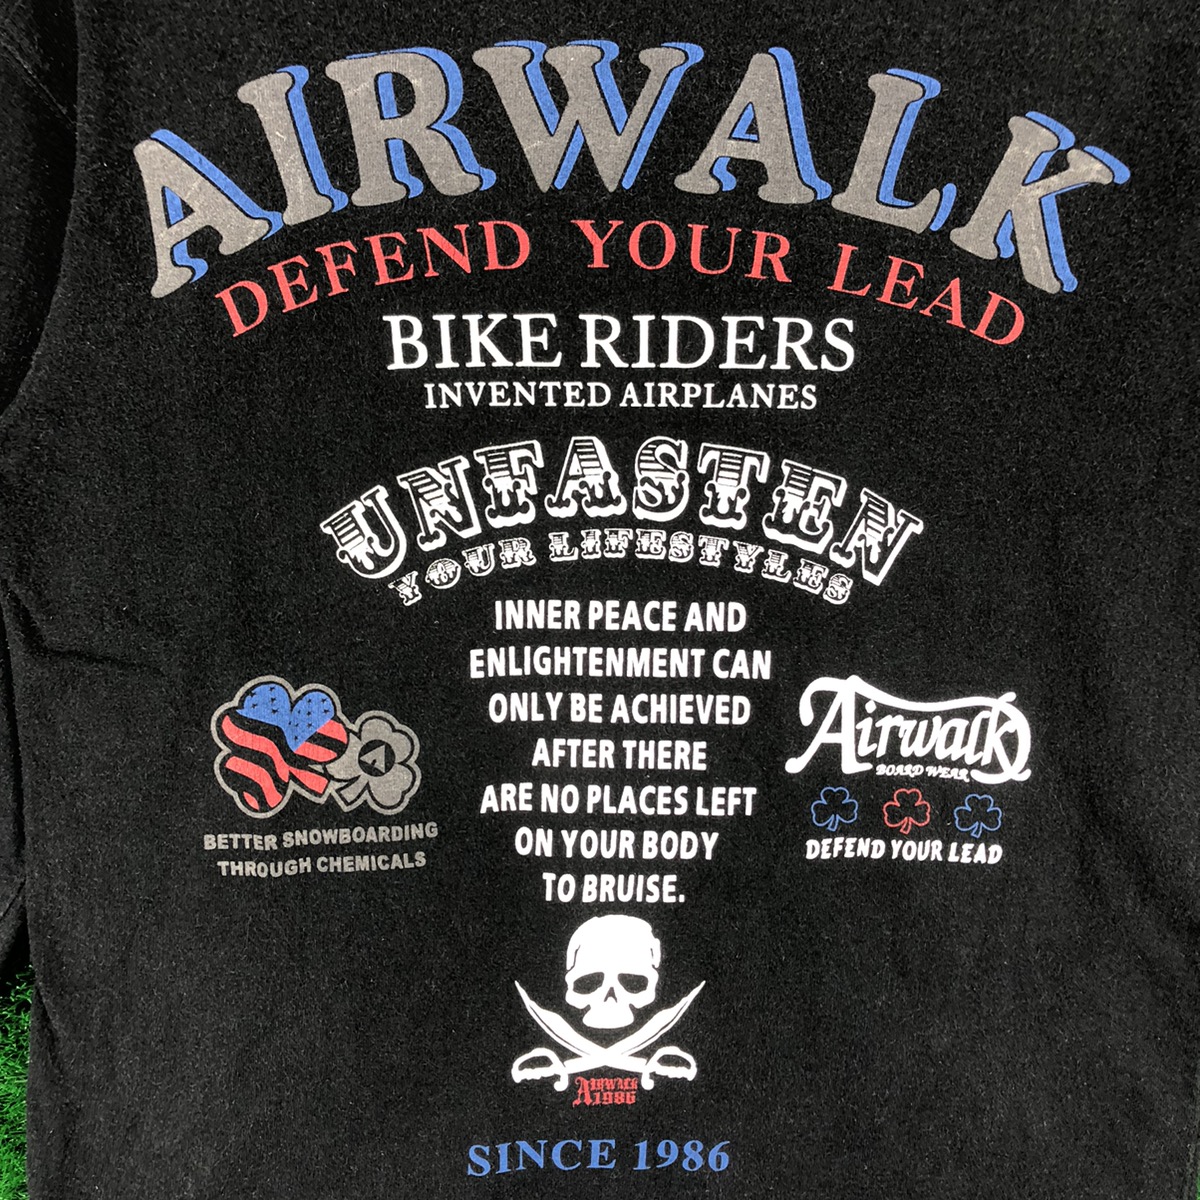 Streetwear - Vintage Airwalk Defend Your Lead Big Logo Long Sleeve Tee - 8